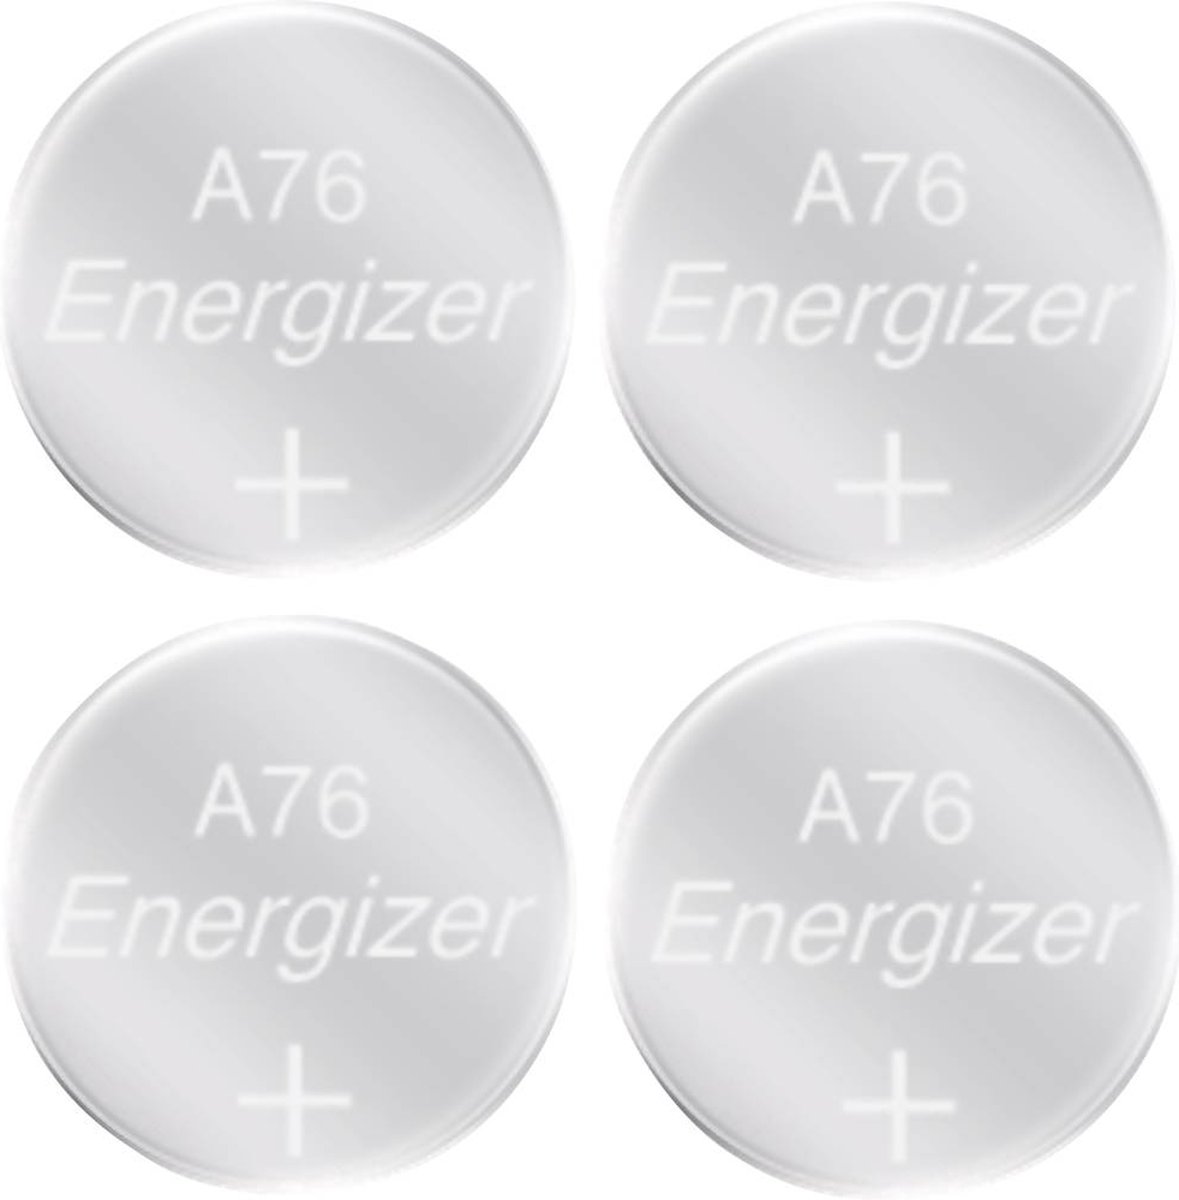 Batteries Energizer LR44/A76, piles bouton lithium, paquet de 12